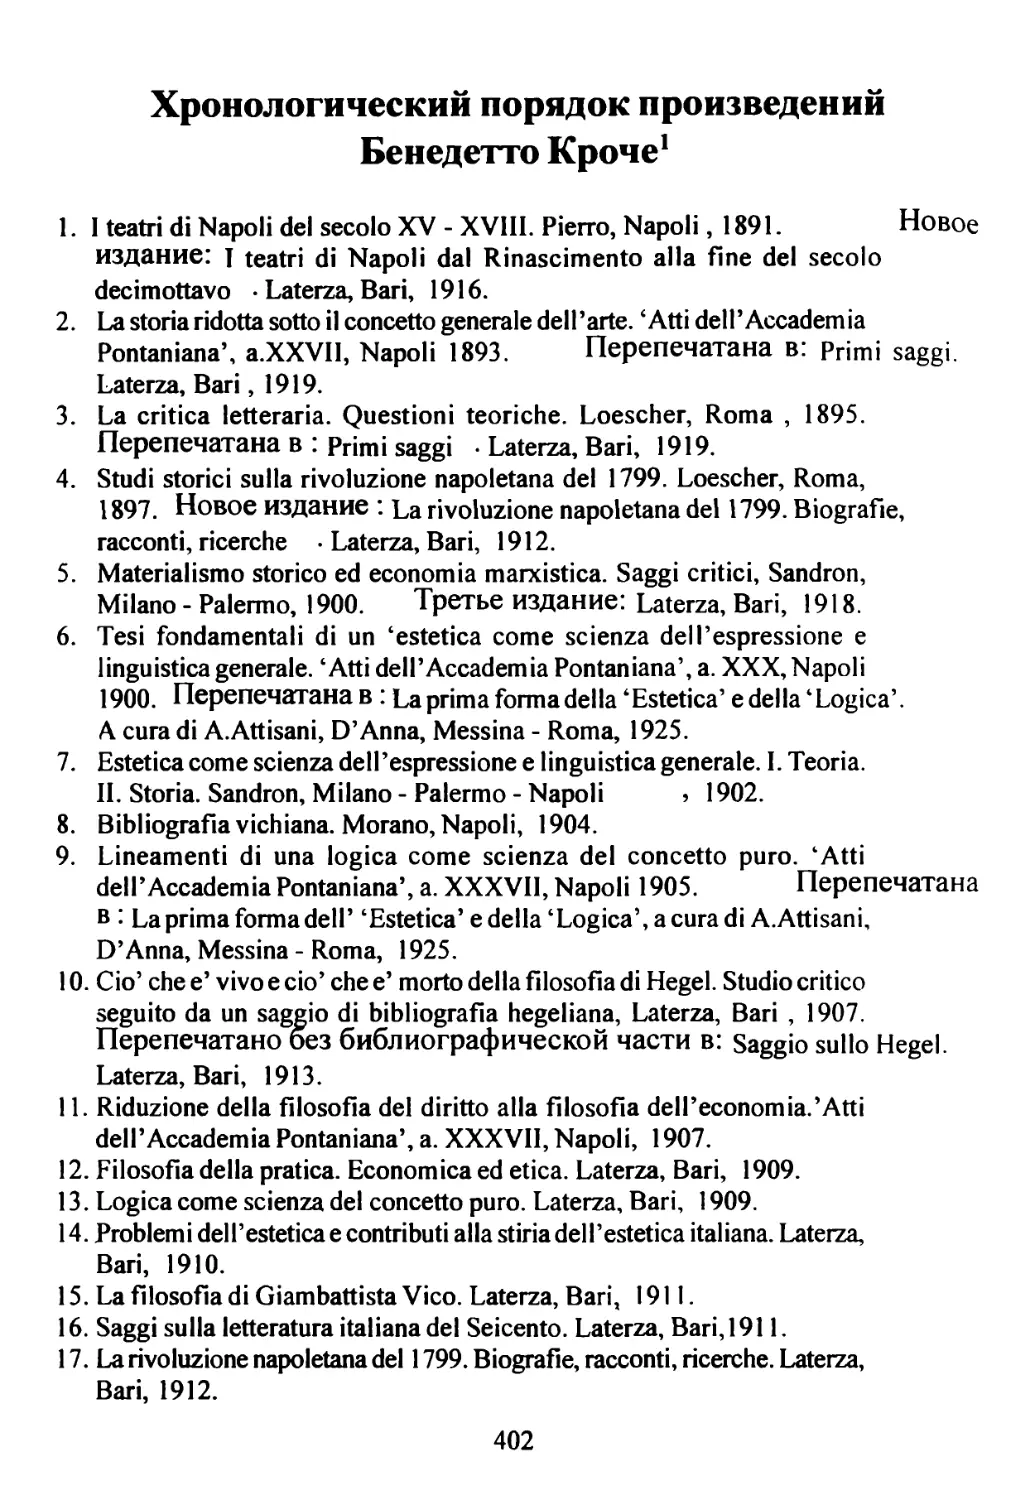 Хронологический порядок произведений Бенедетто Кроче